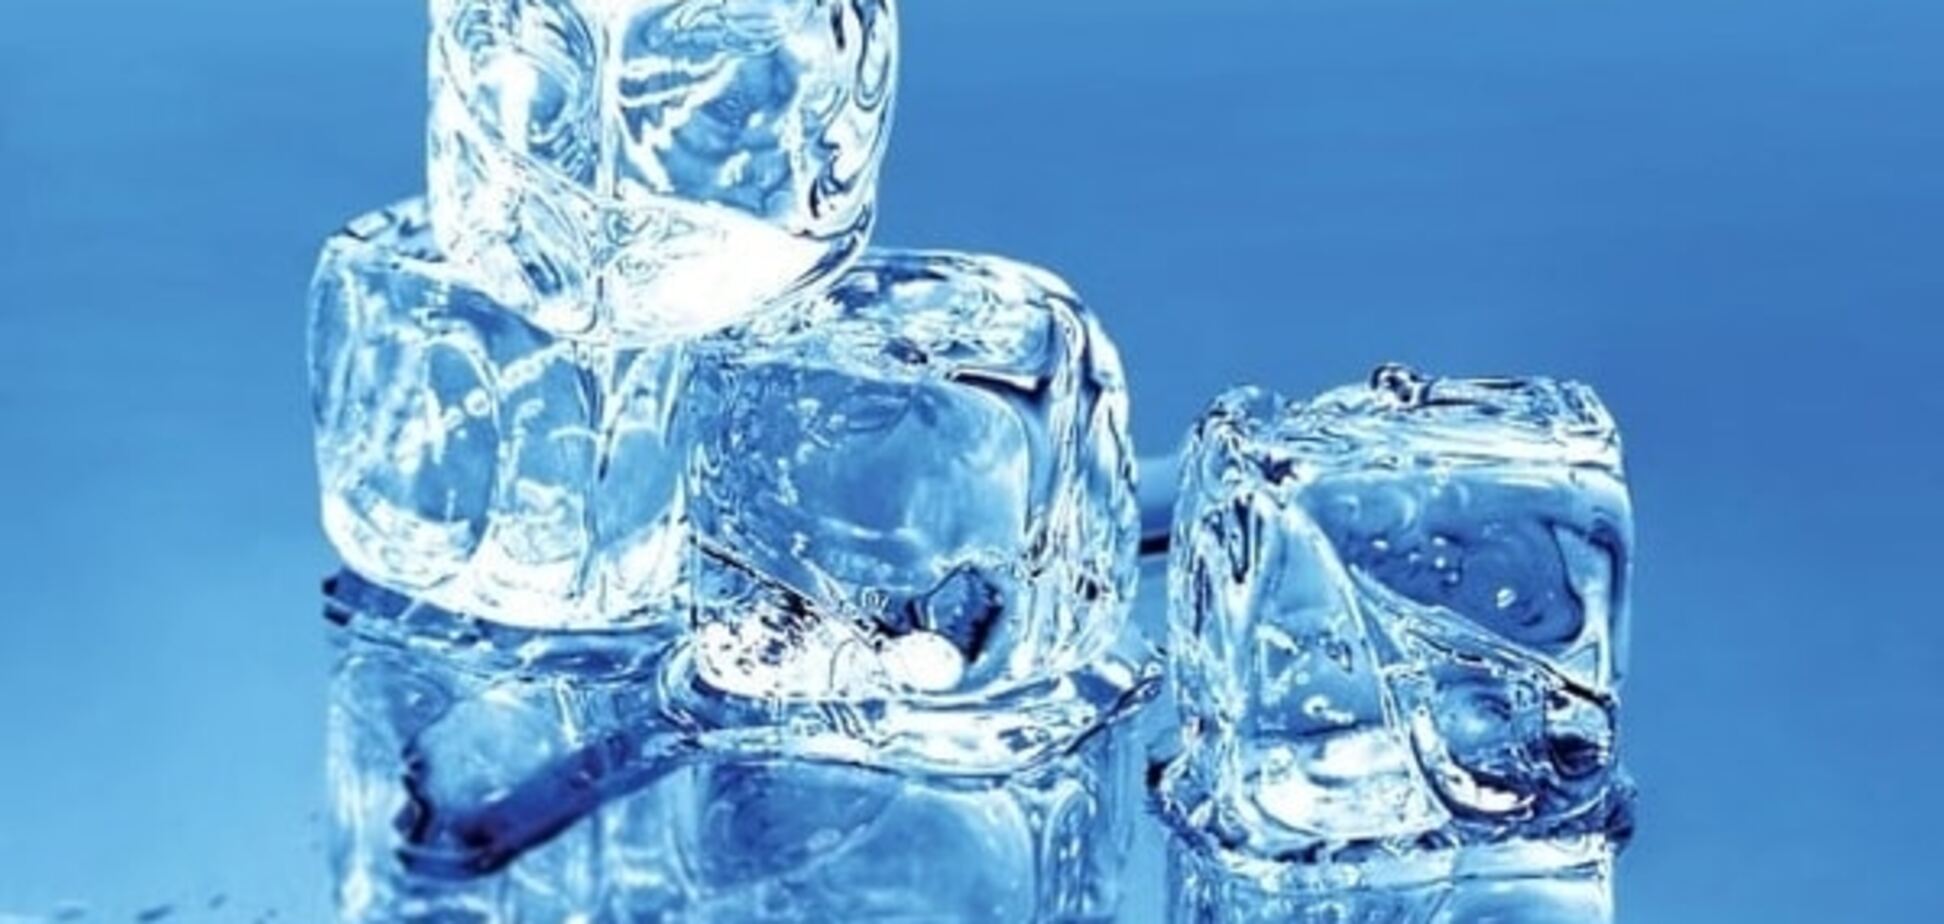 Холод и боль: три главных мифа о пользе льда при травмах мышц